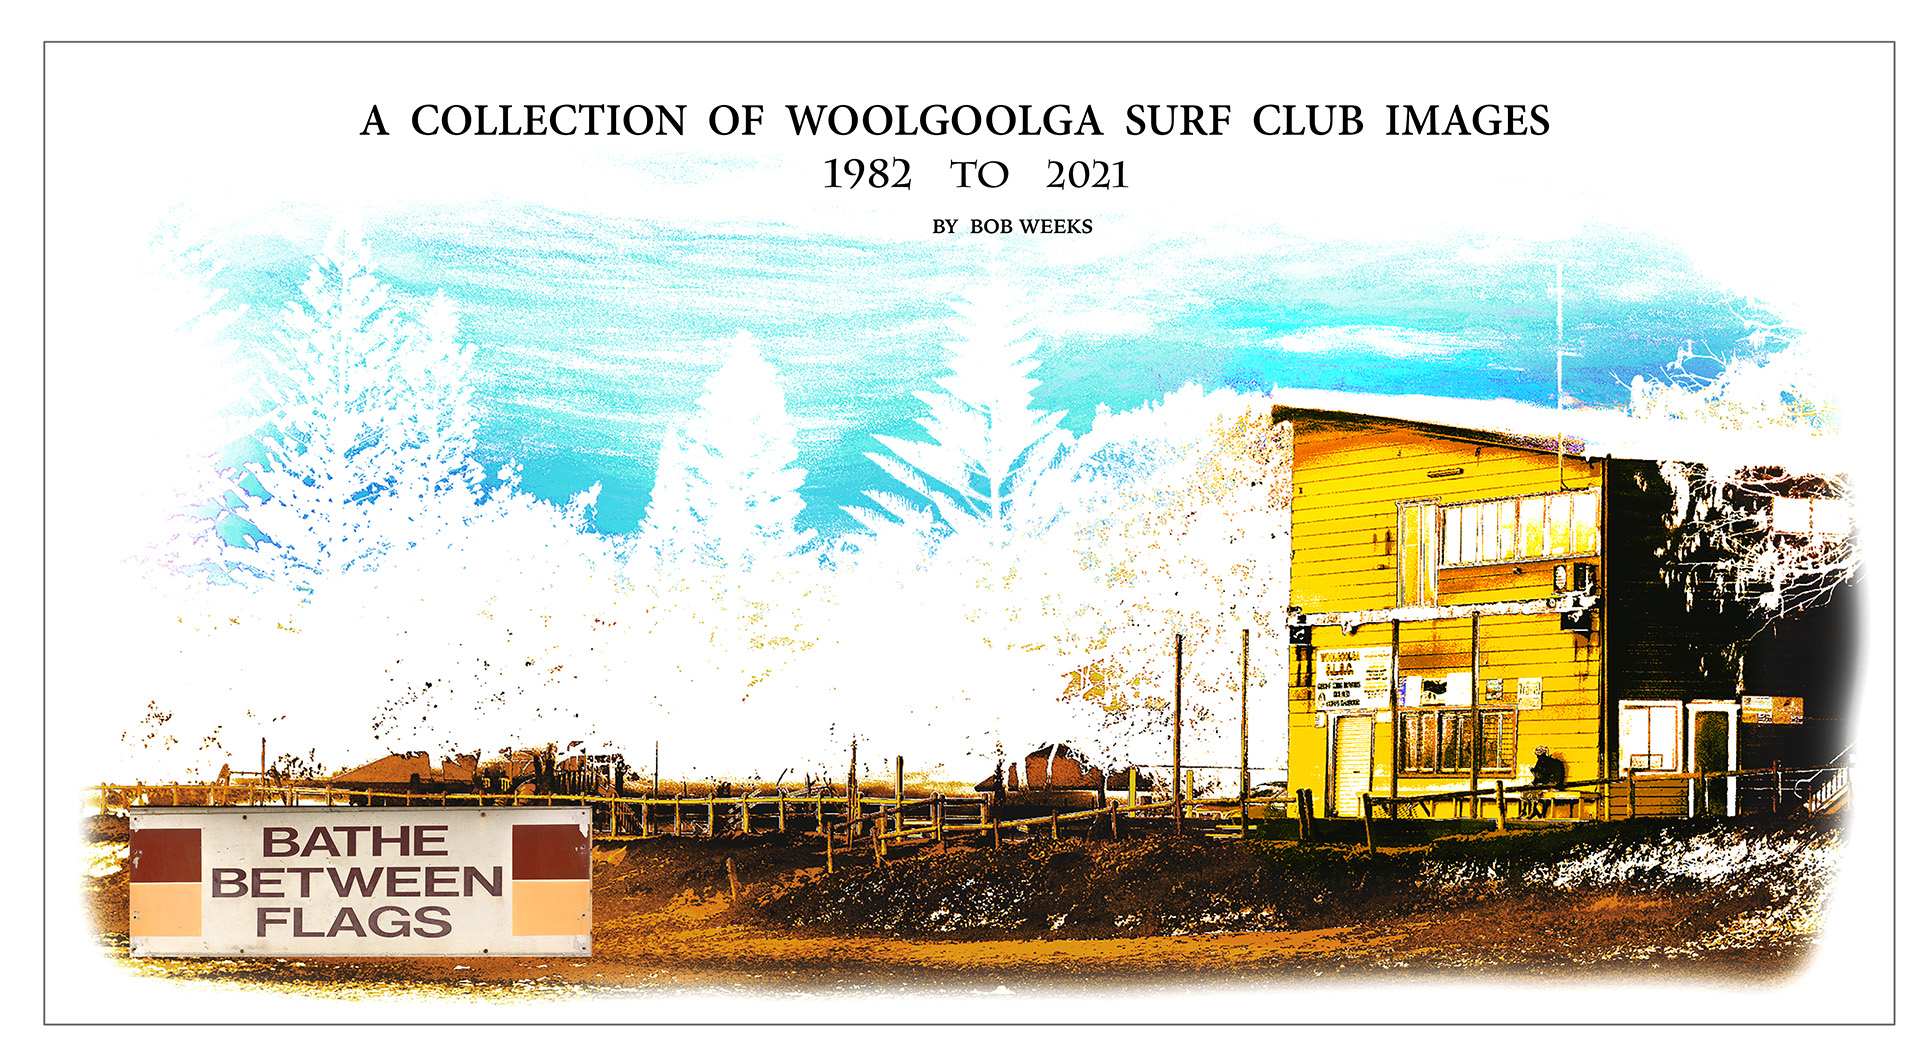 Woolgoolga Surf Club Images Cover Image